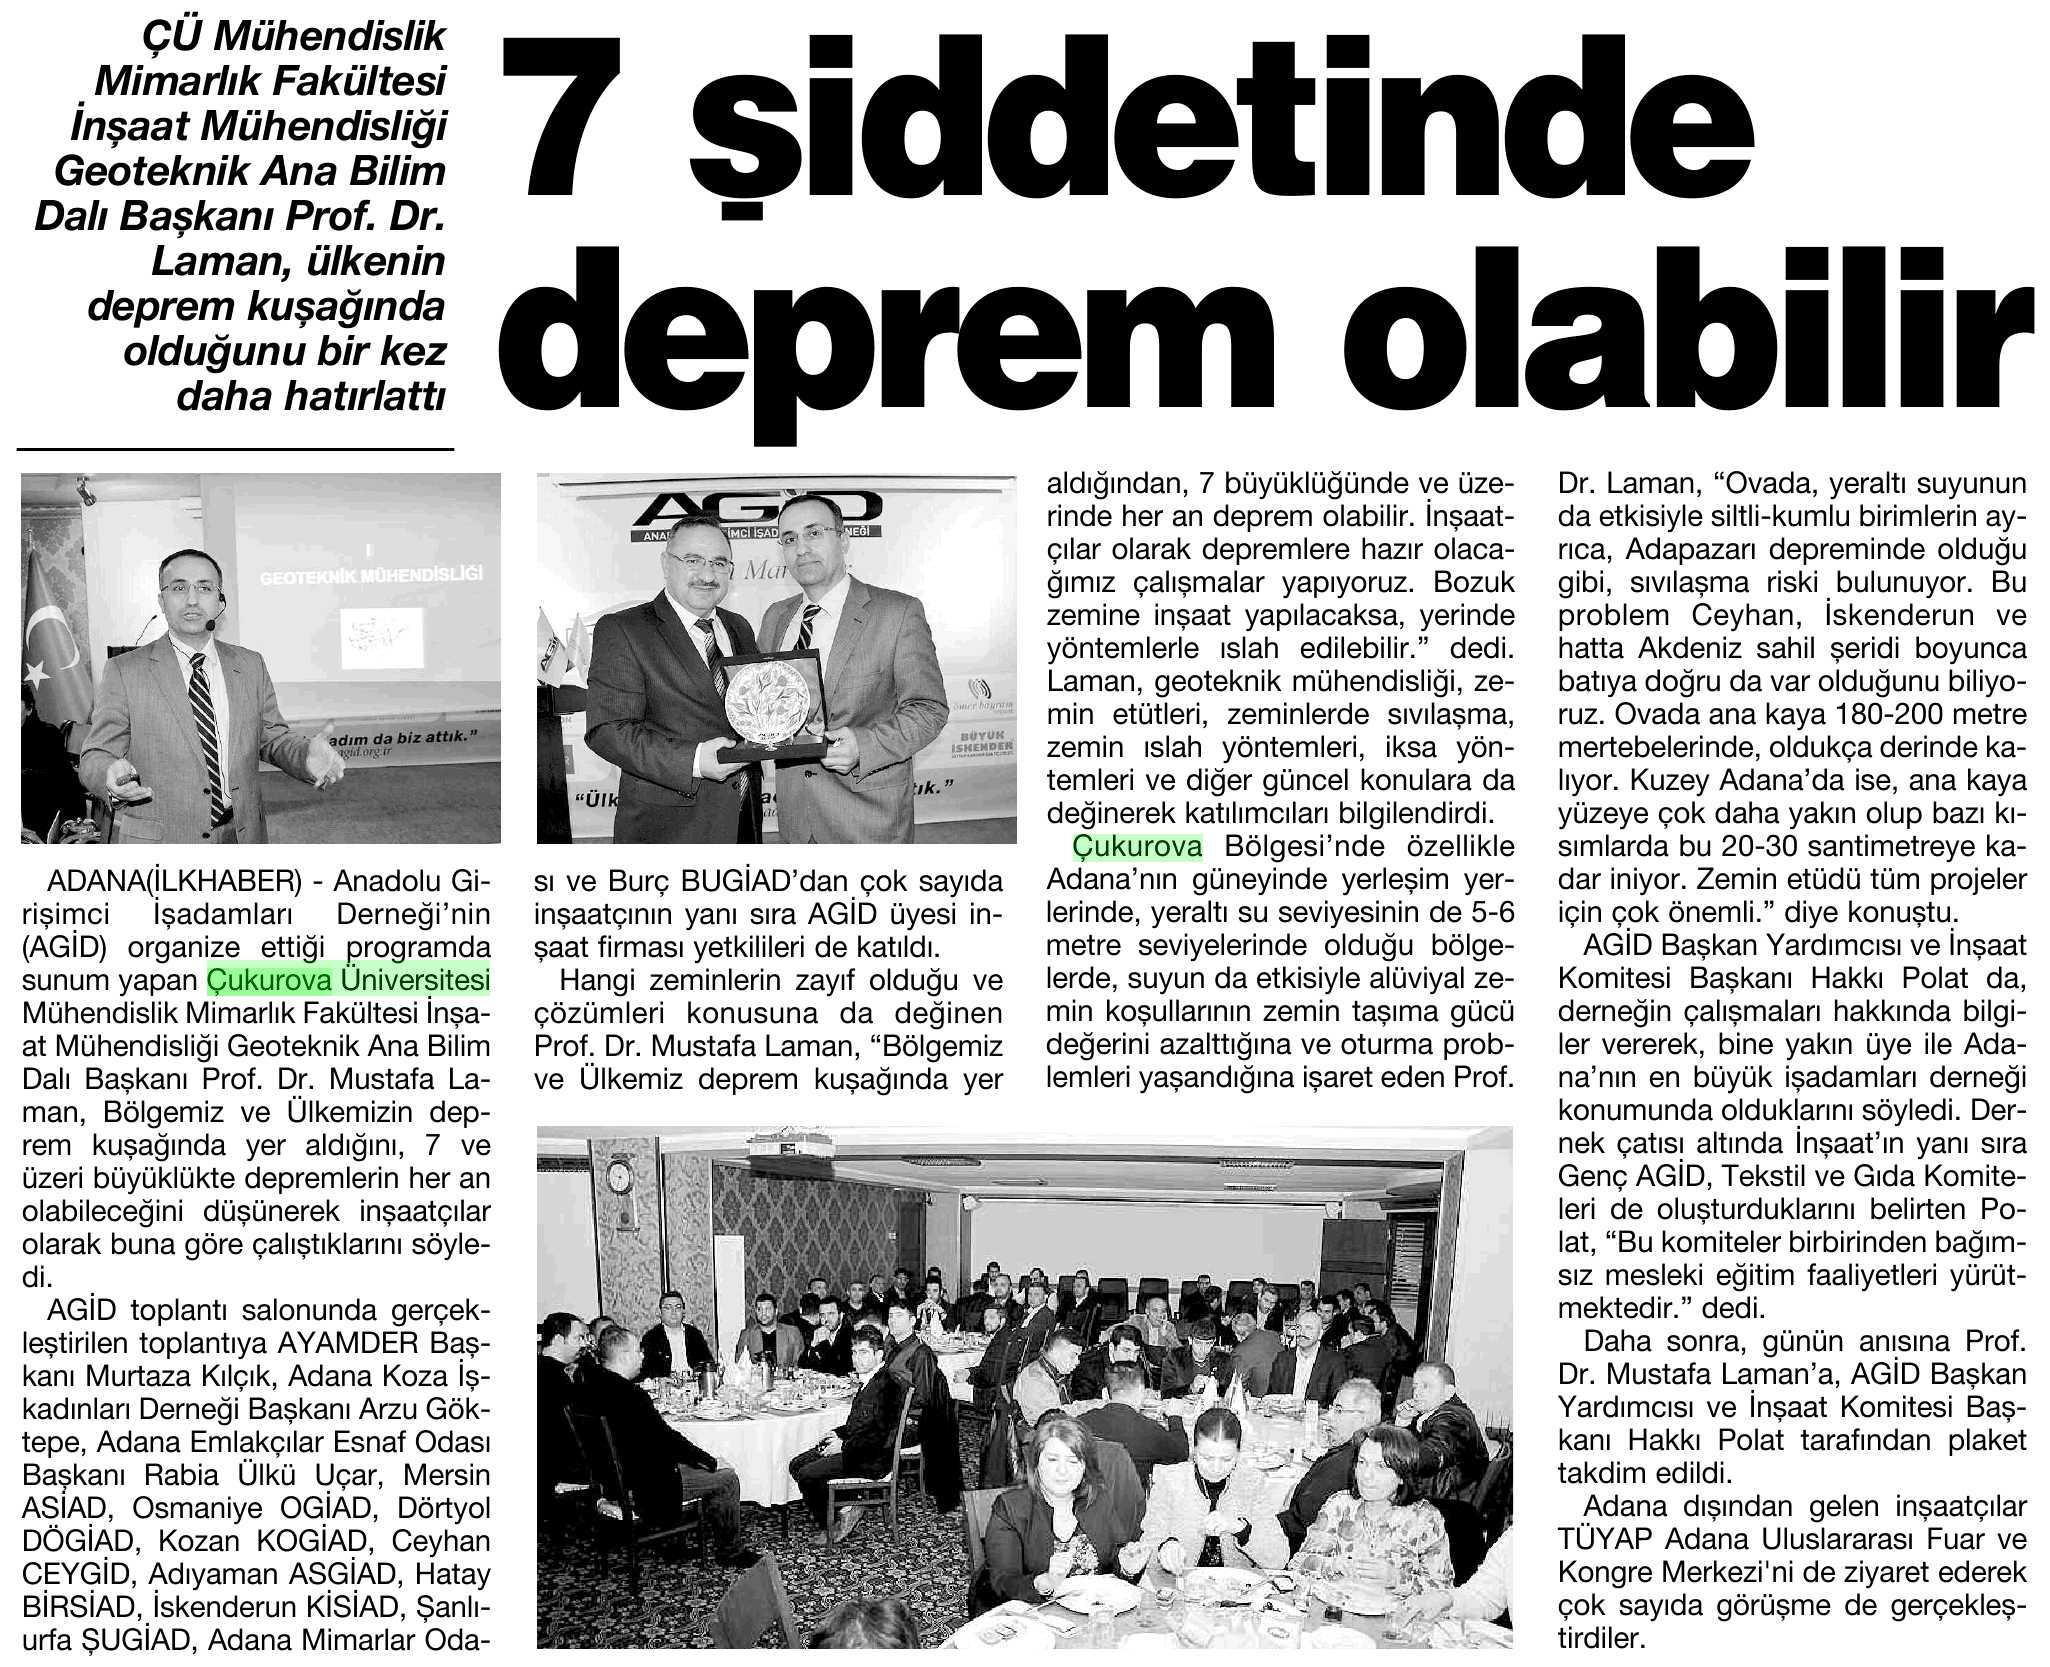 7 SIDDETINDE DEPREM OLABILIR Yayın Adı : Adana Ilk